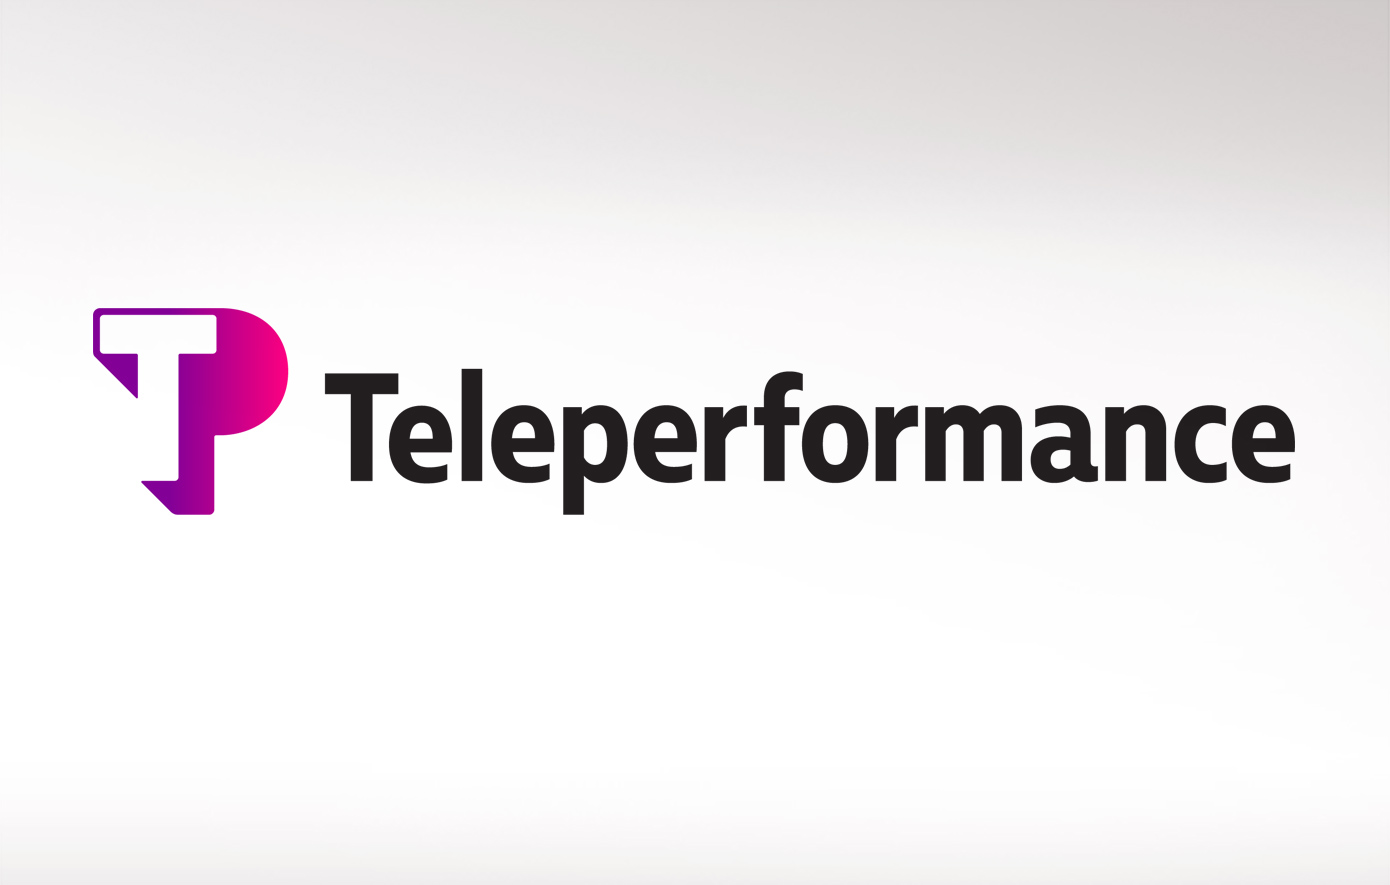 Η Teleperformance ενώνει τις δυνάμεις της με την Kore.ai για να αναβαθμίσει την εξυπηρέτηση πελατών μέσω προηγμένων λύσεων AI